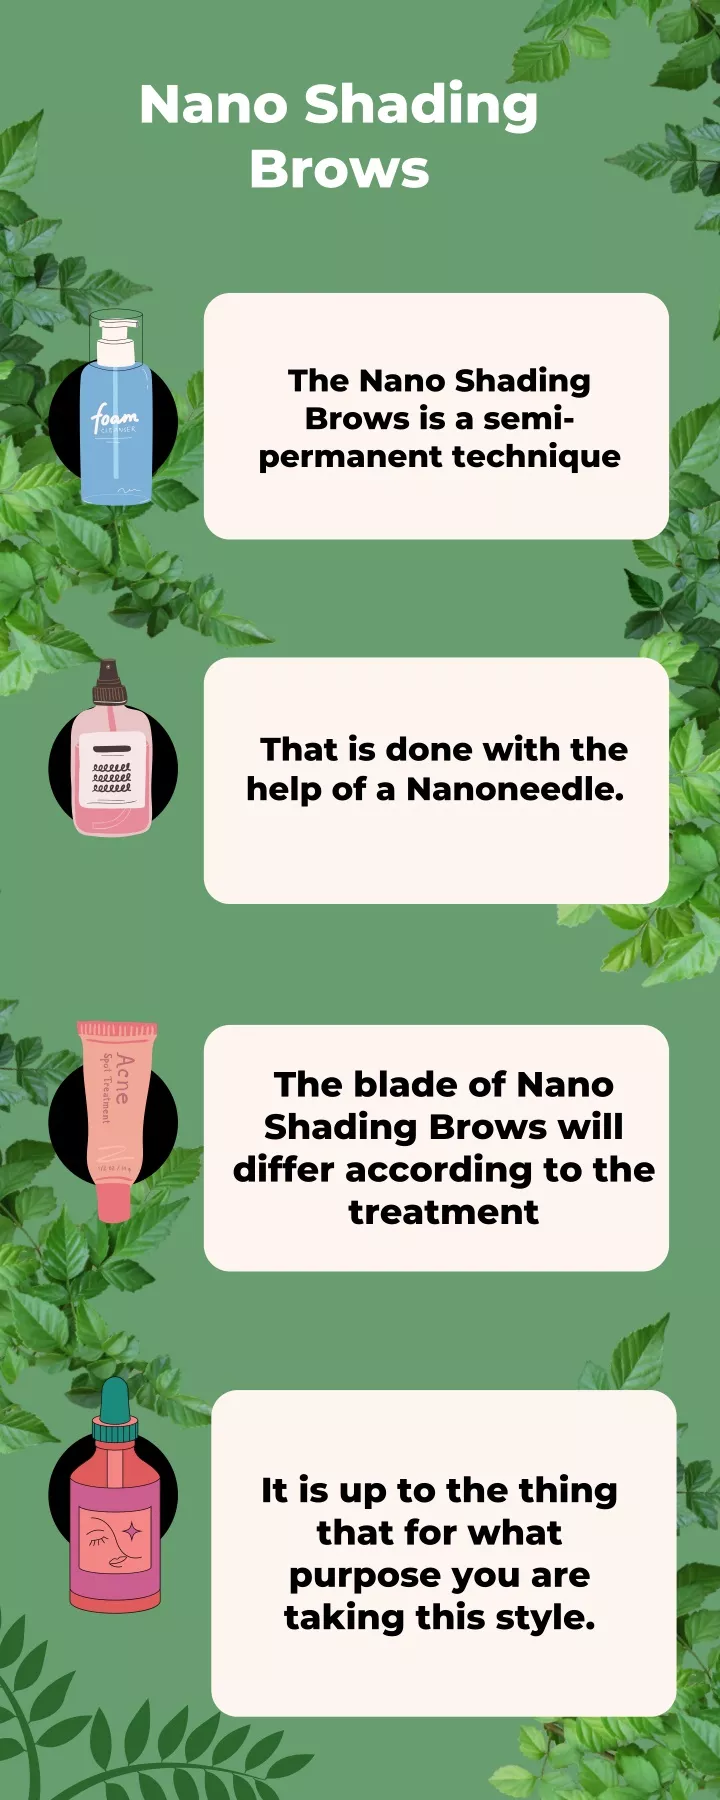 nano shading brows